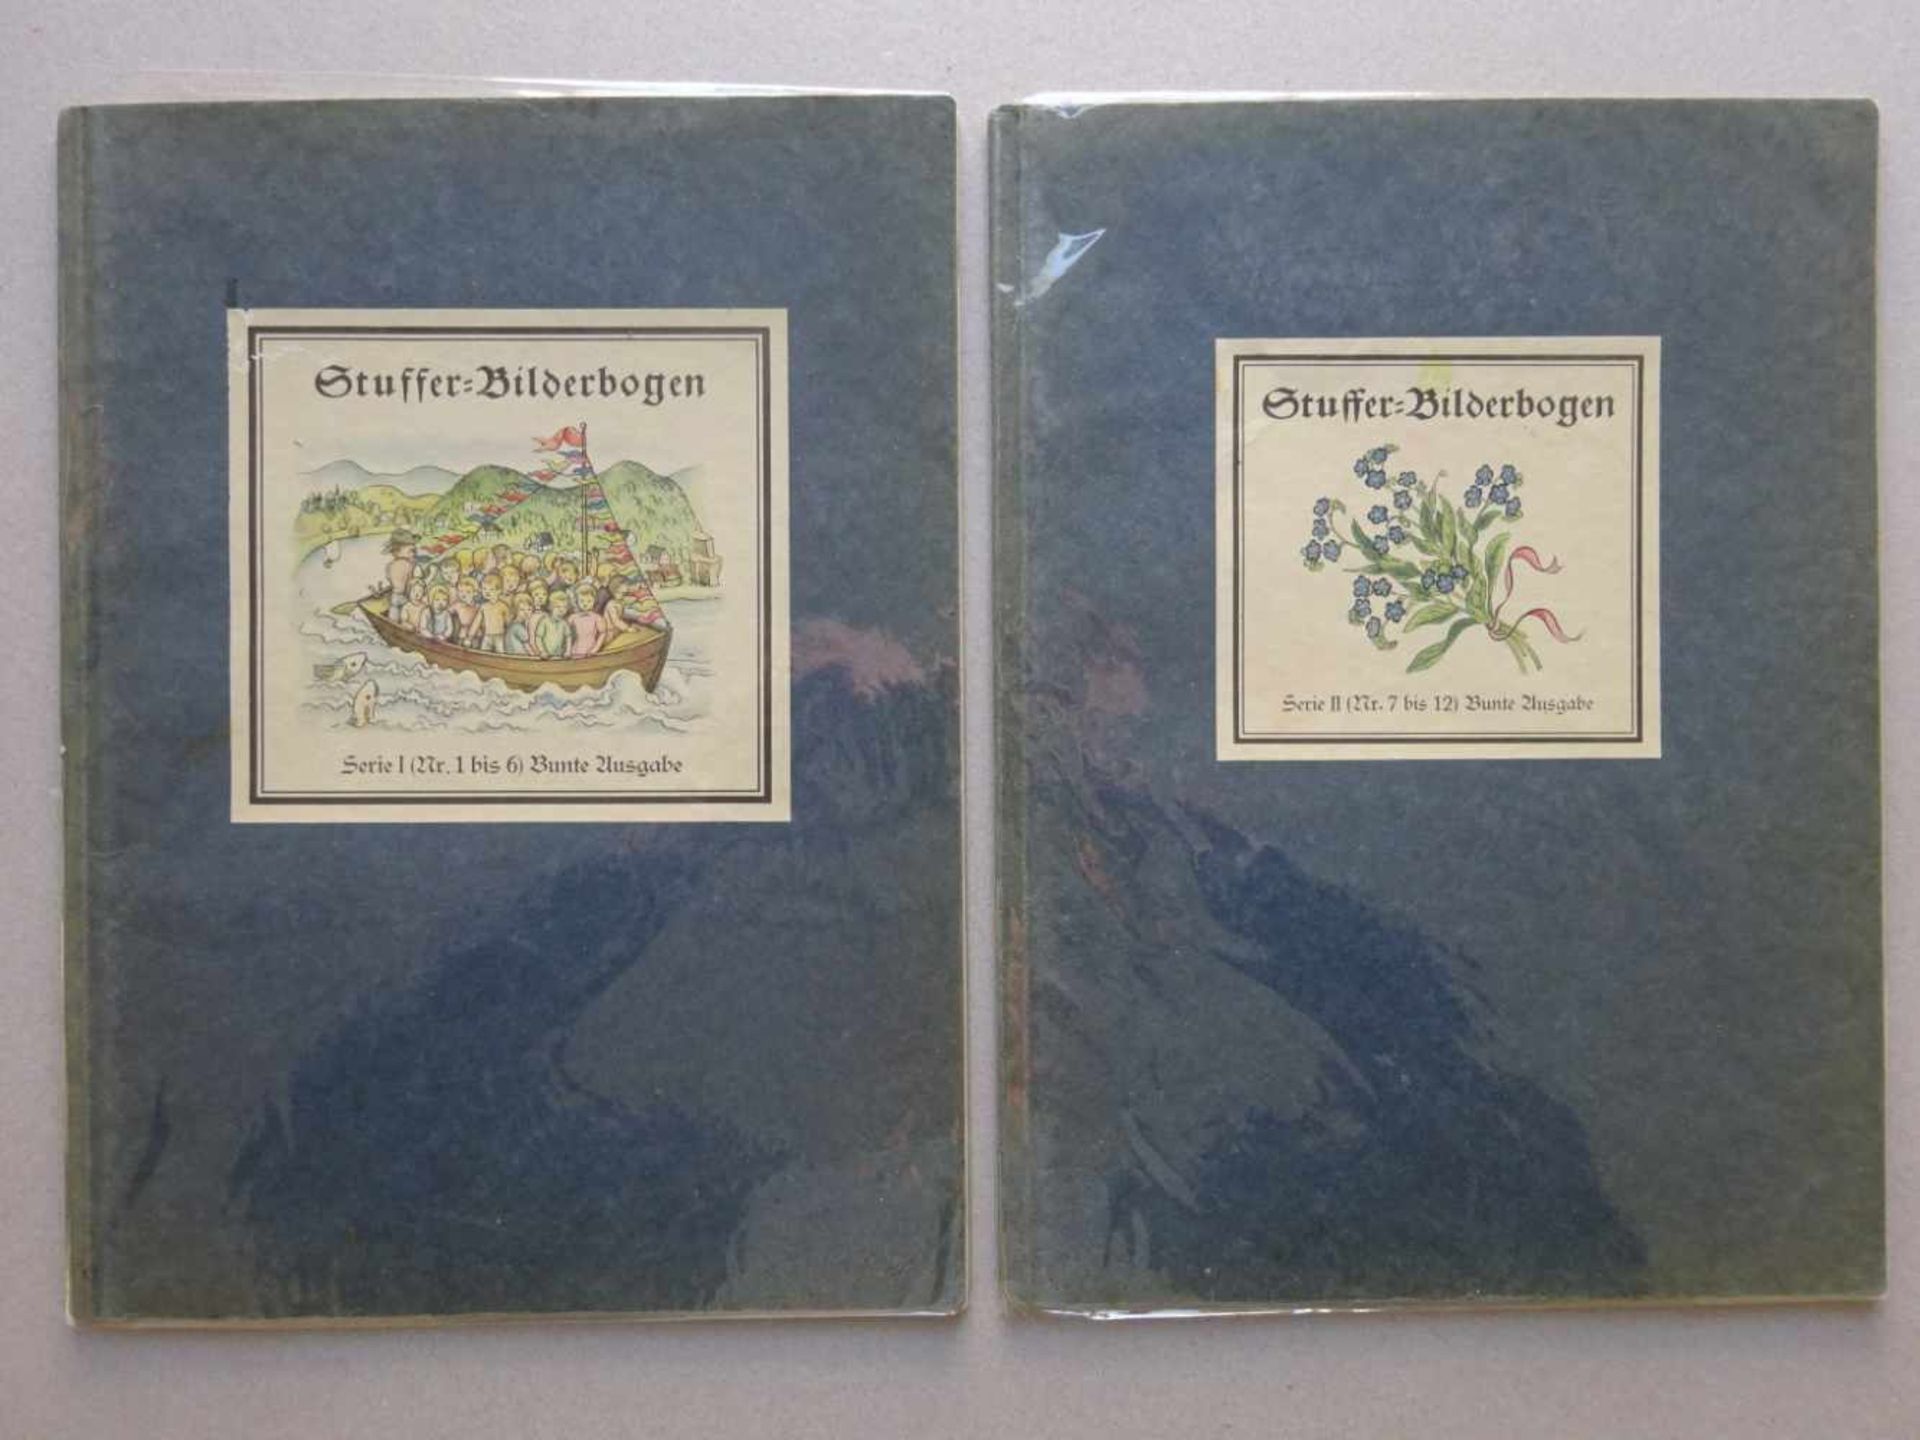 Bilderbogen.-Stuffer-Bilderbogen. Serie I und II, Nummern 1-6 und 7-12 (ohne den 9. Bogen) in 2 Bdn. - Bild 4 aus 4